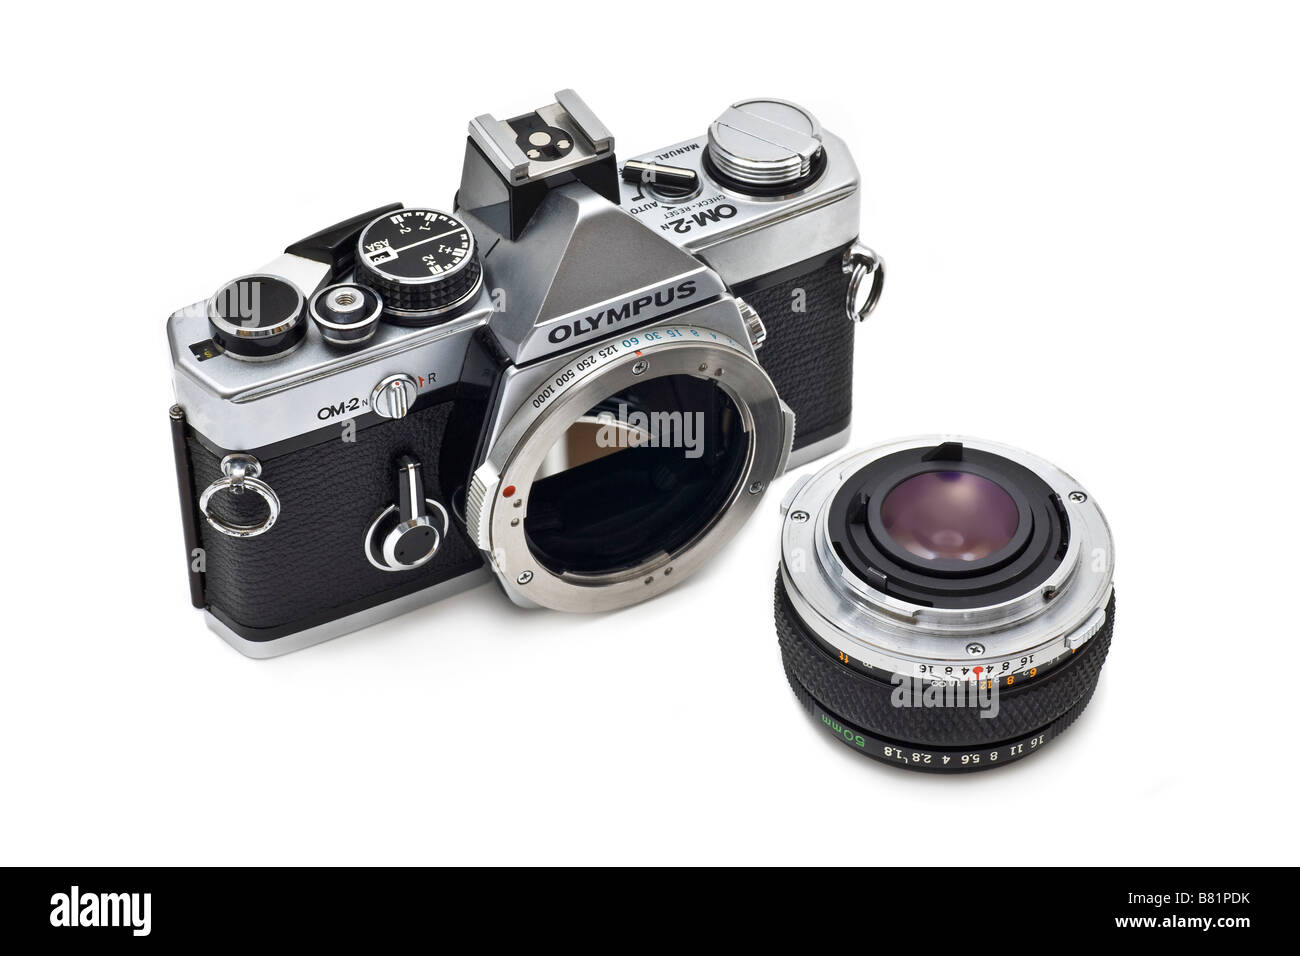 Olympus OM2 35mm twin 20 Appareil photo reflex à objectif interchangeable avec monture à baïonnette à bride Banque D'Images